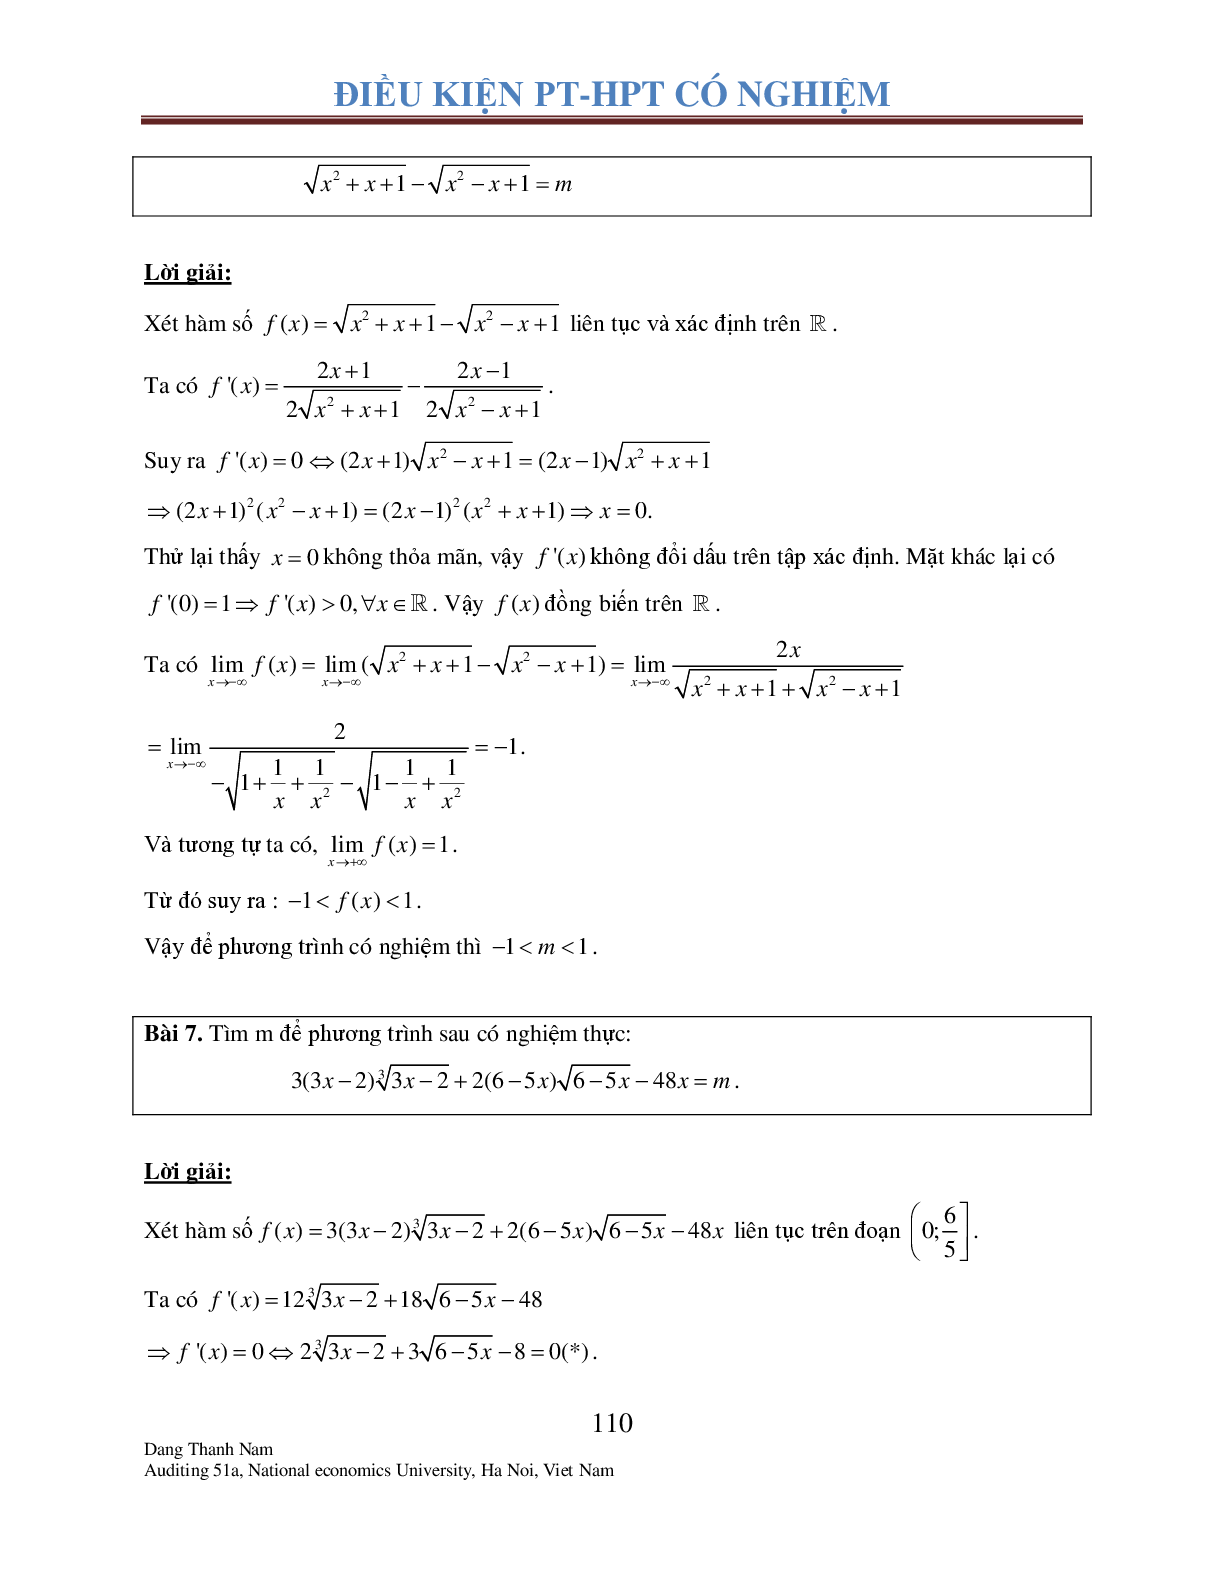 Chuyên đề 2: Tìm điều kiện để Phương trình – Hệ phương trình có nghiệm (trang 9)